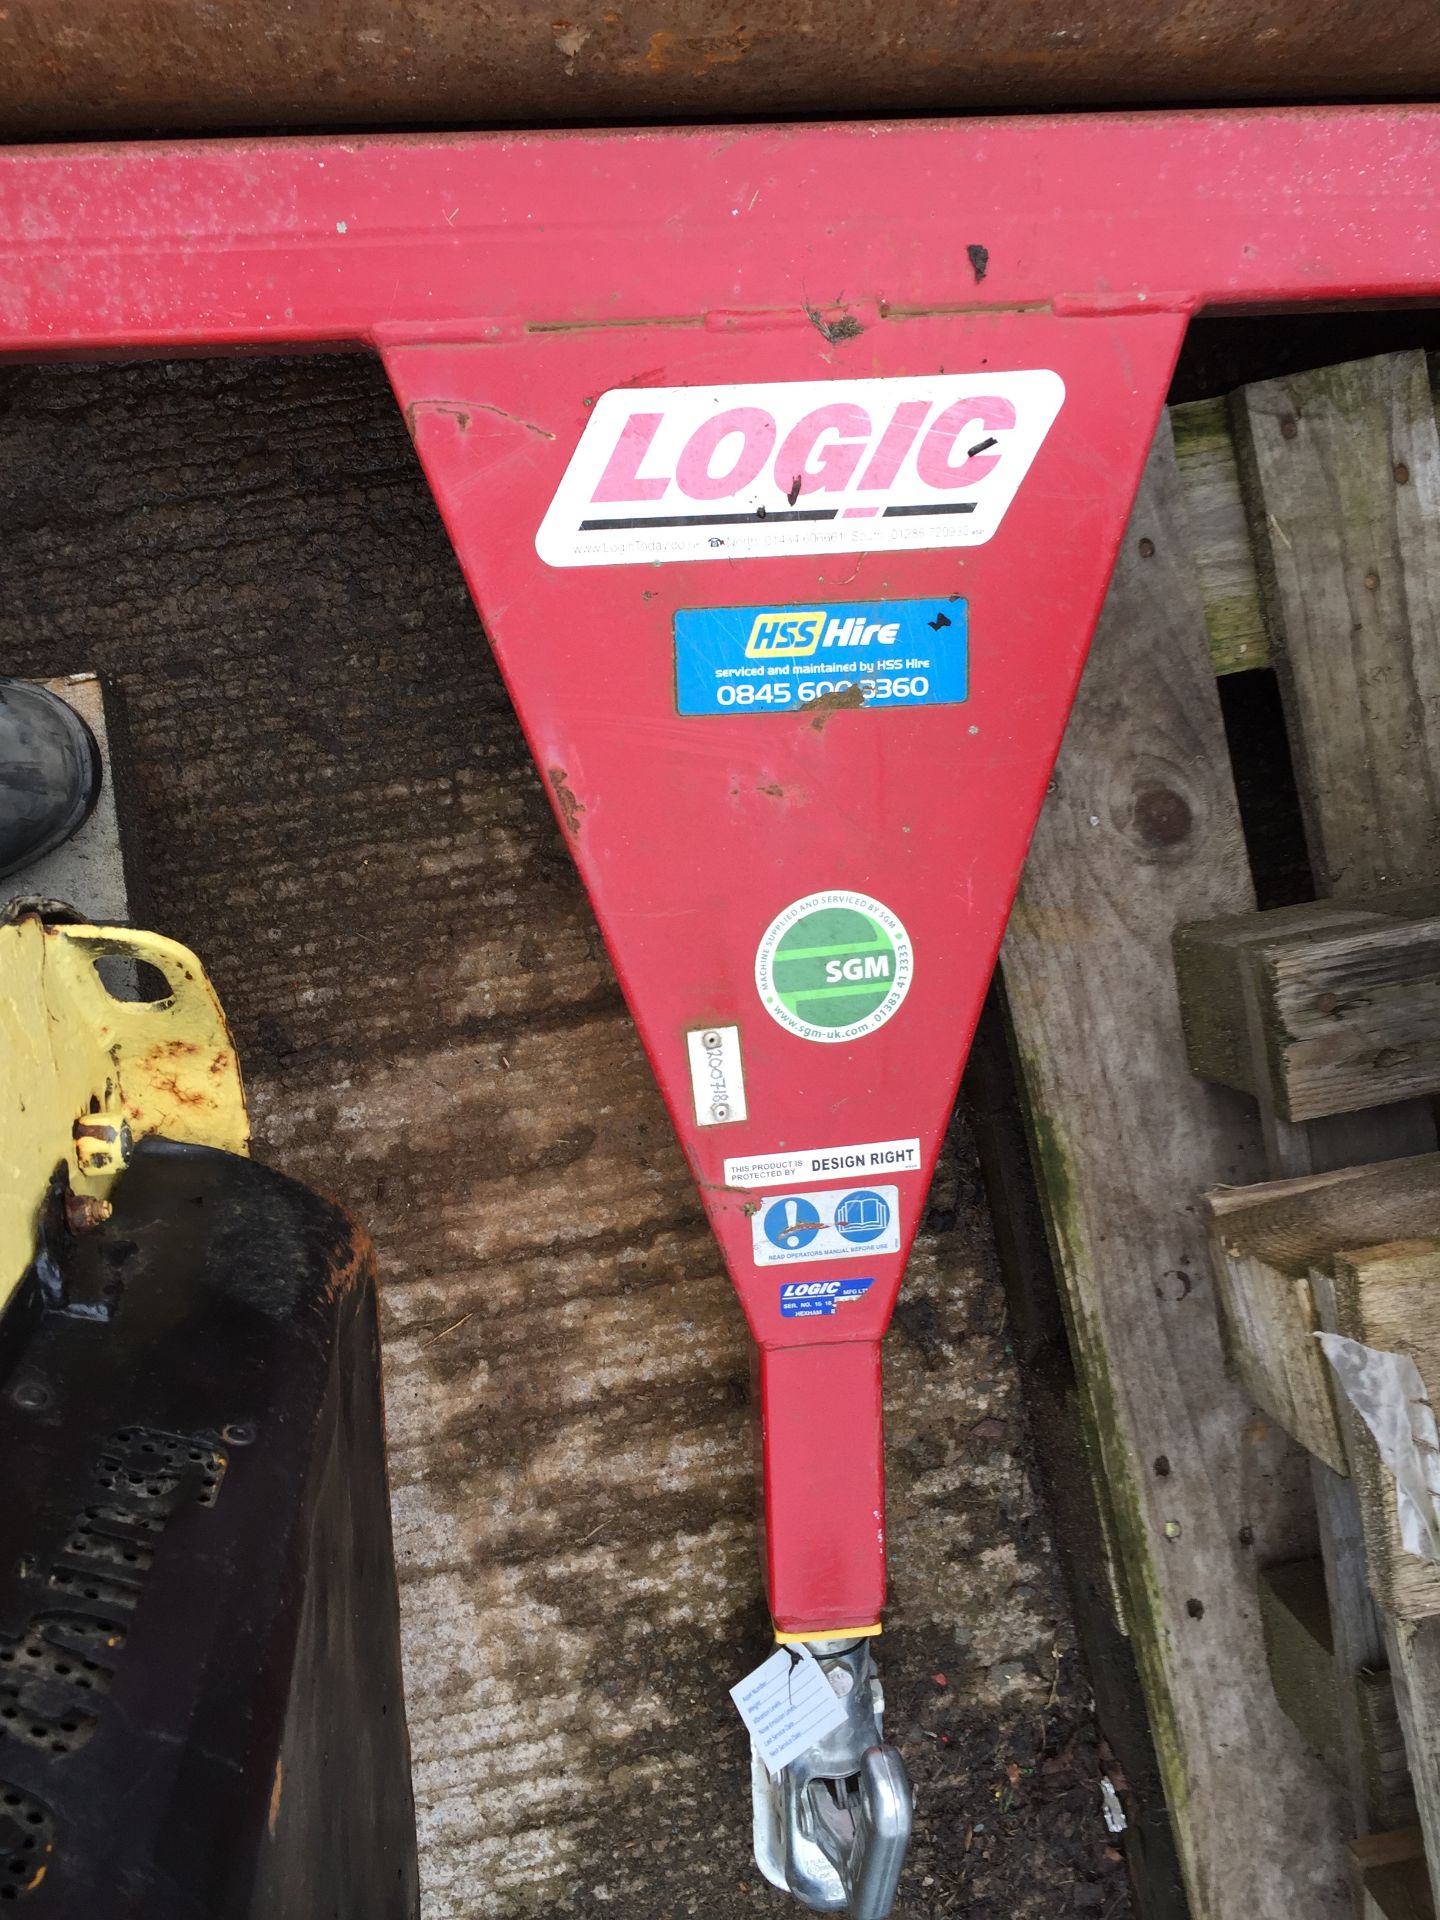 2016 Logic BR180 288kg Roller (red) - Image 2 of 2